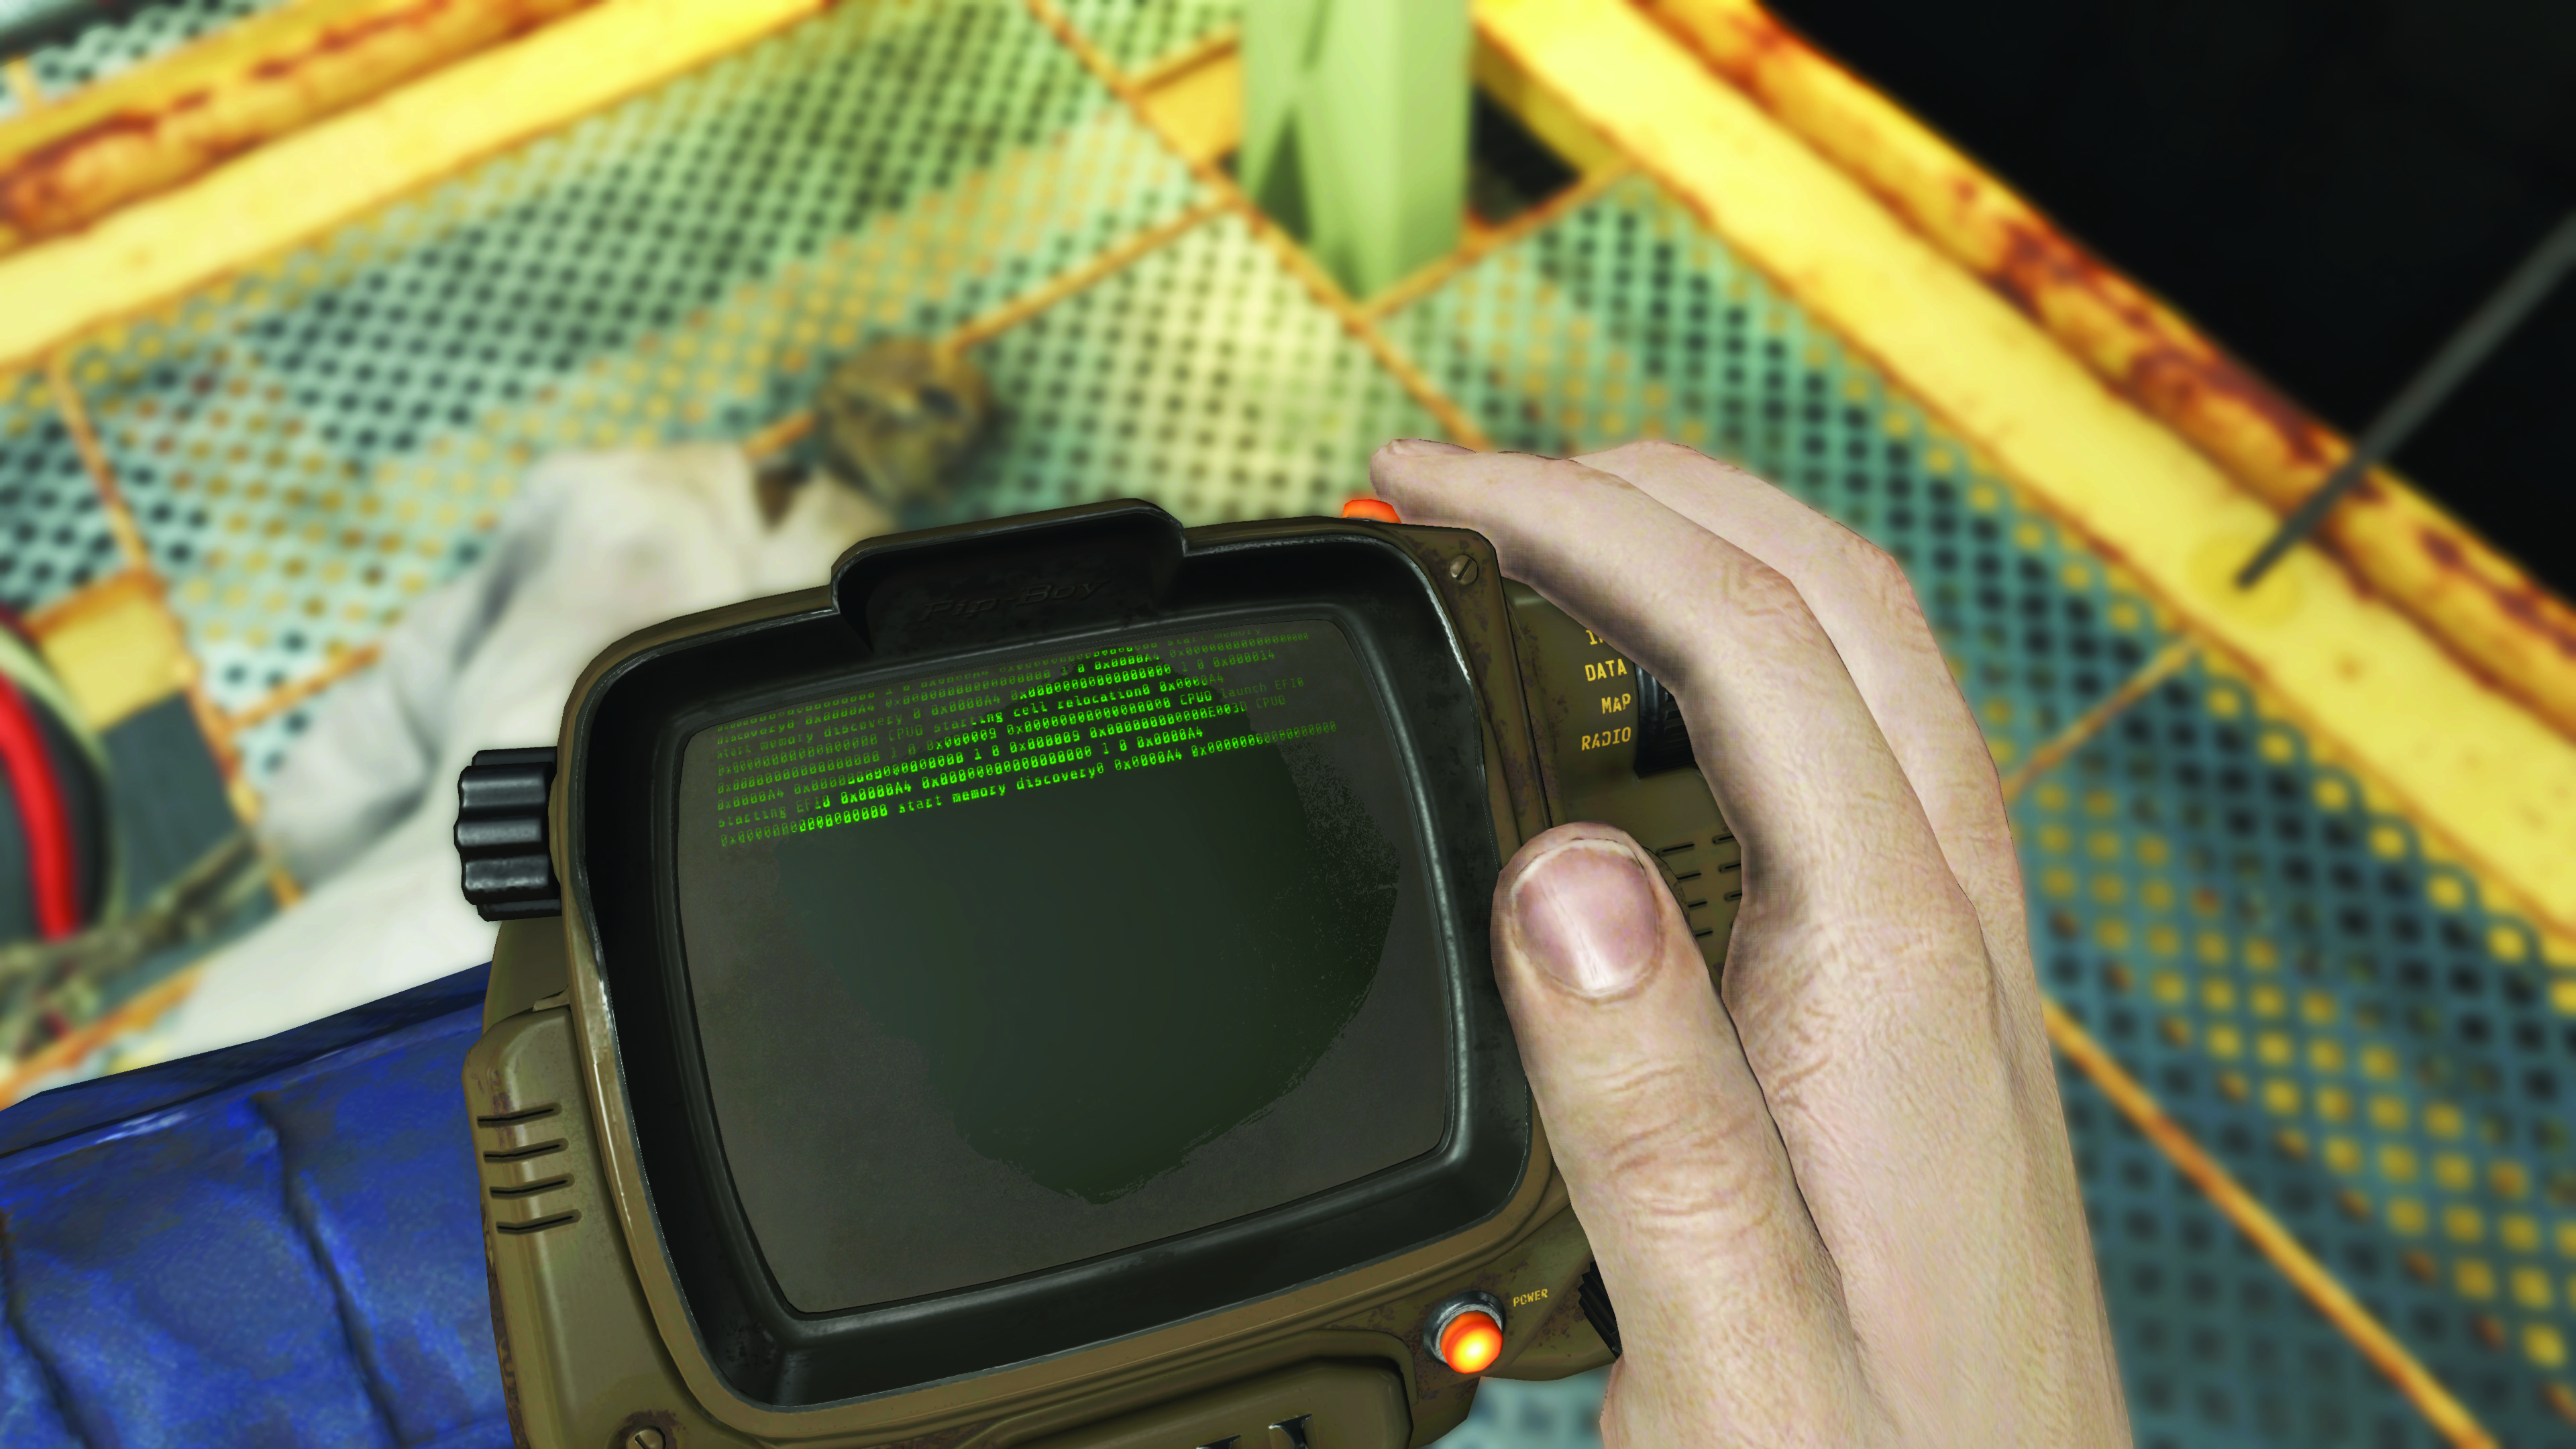 The Fallout 4 RobCo PIP Boy 2000